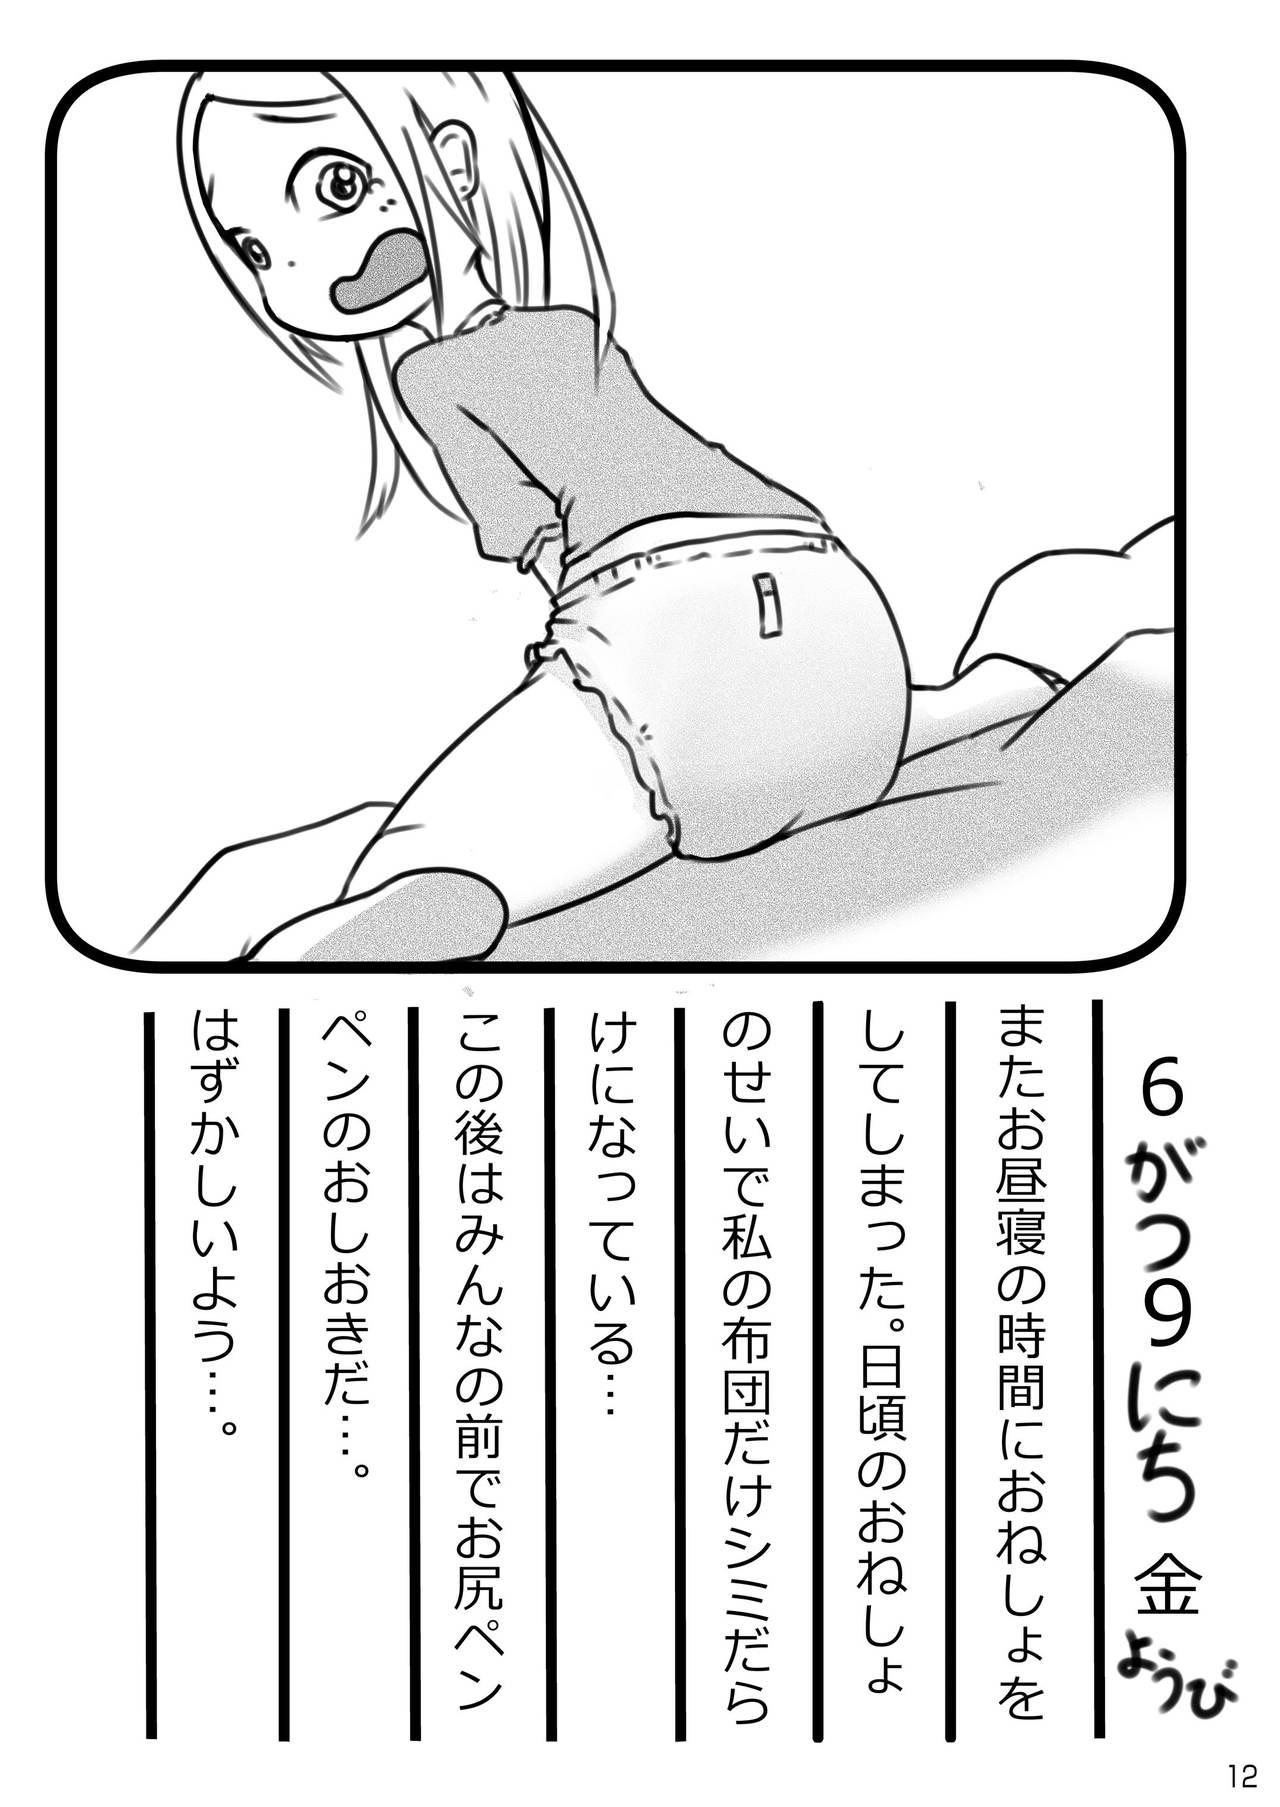 Omu☆Fes 4 Kaisai Kinen Goudoushi "Omutsukko PARTY! 4" 11